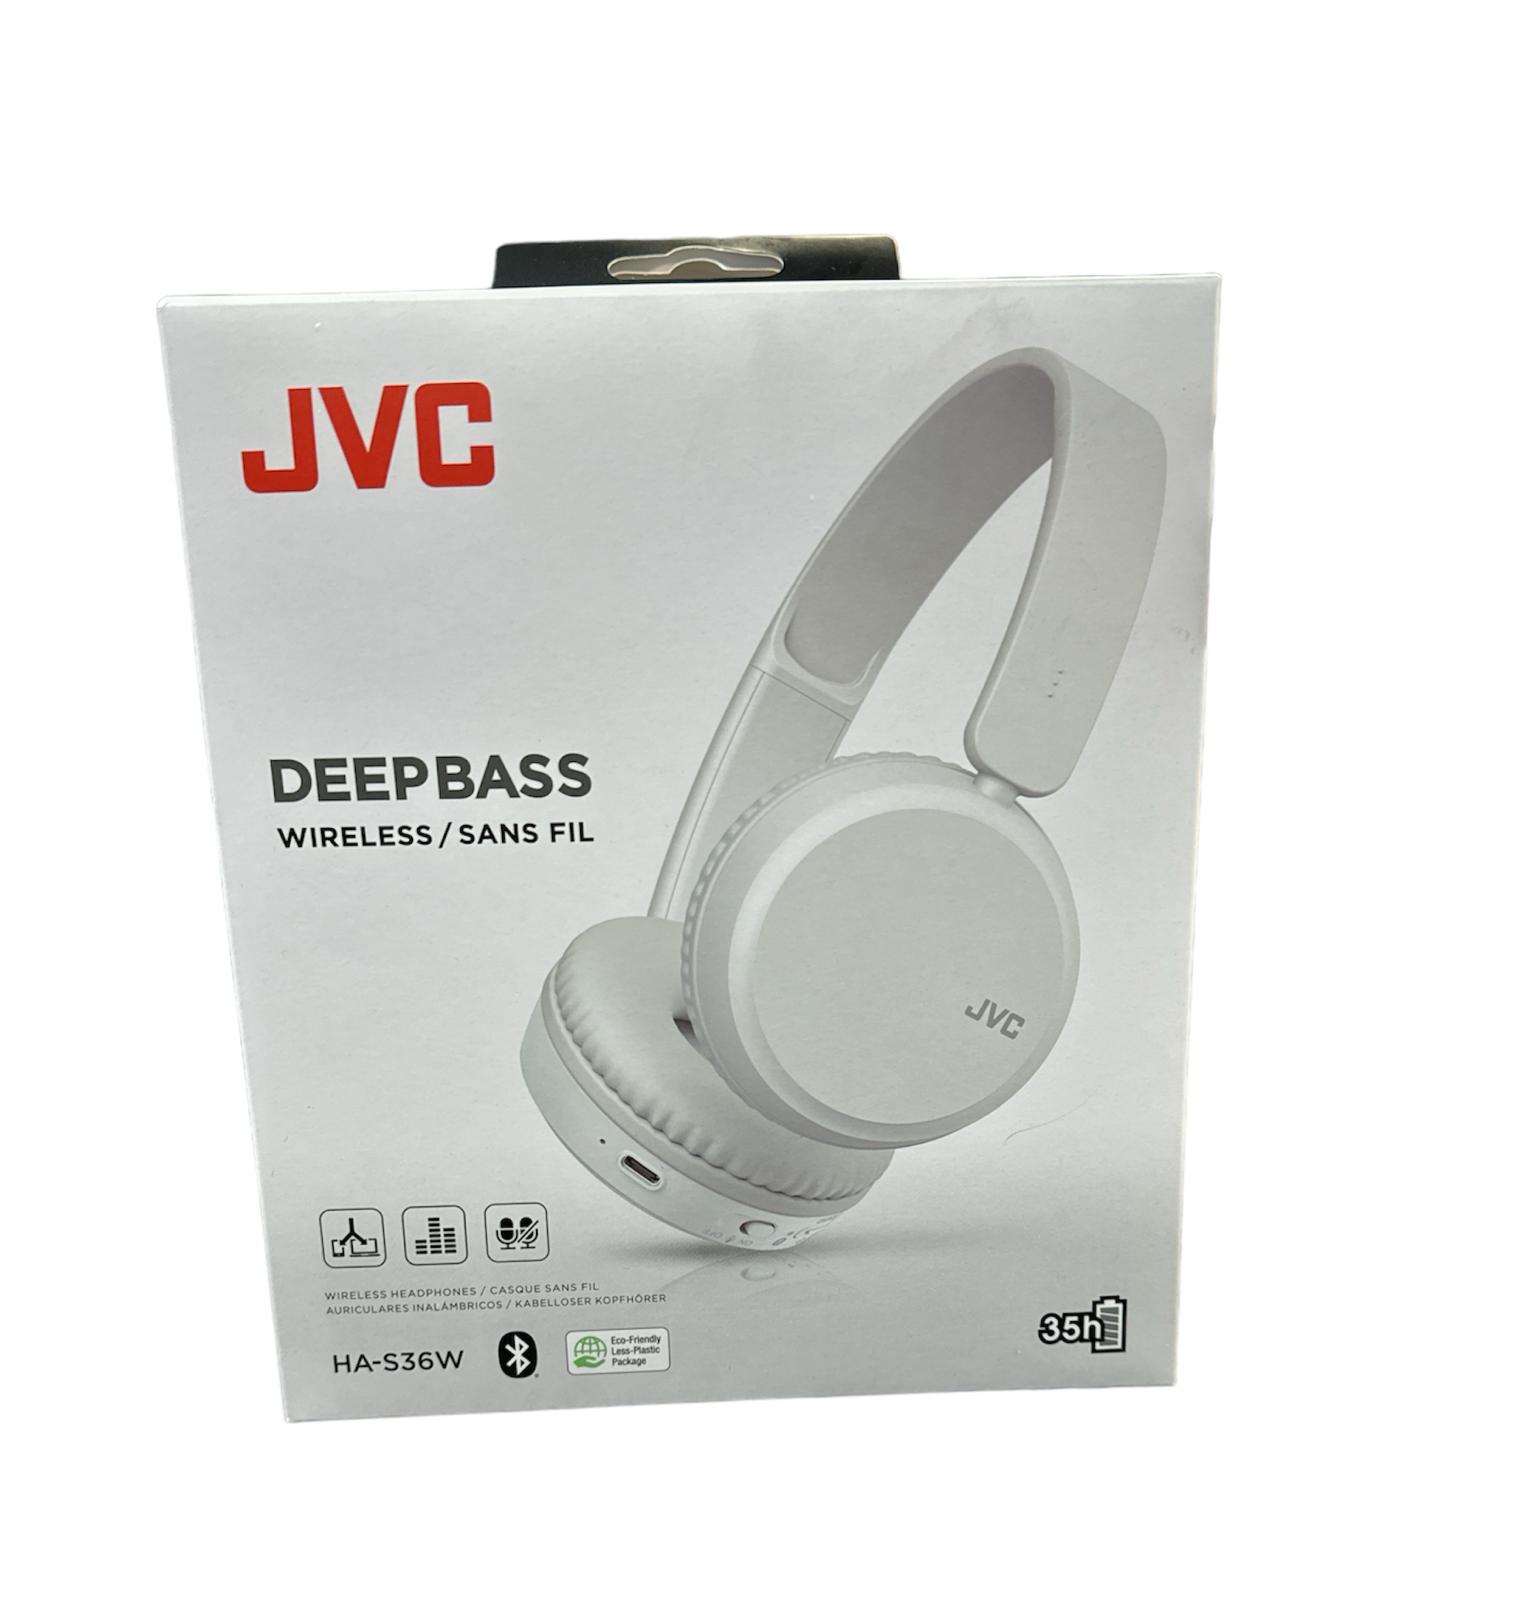 JVC Deep Bass Wireless Headphones Brand New